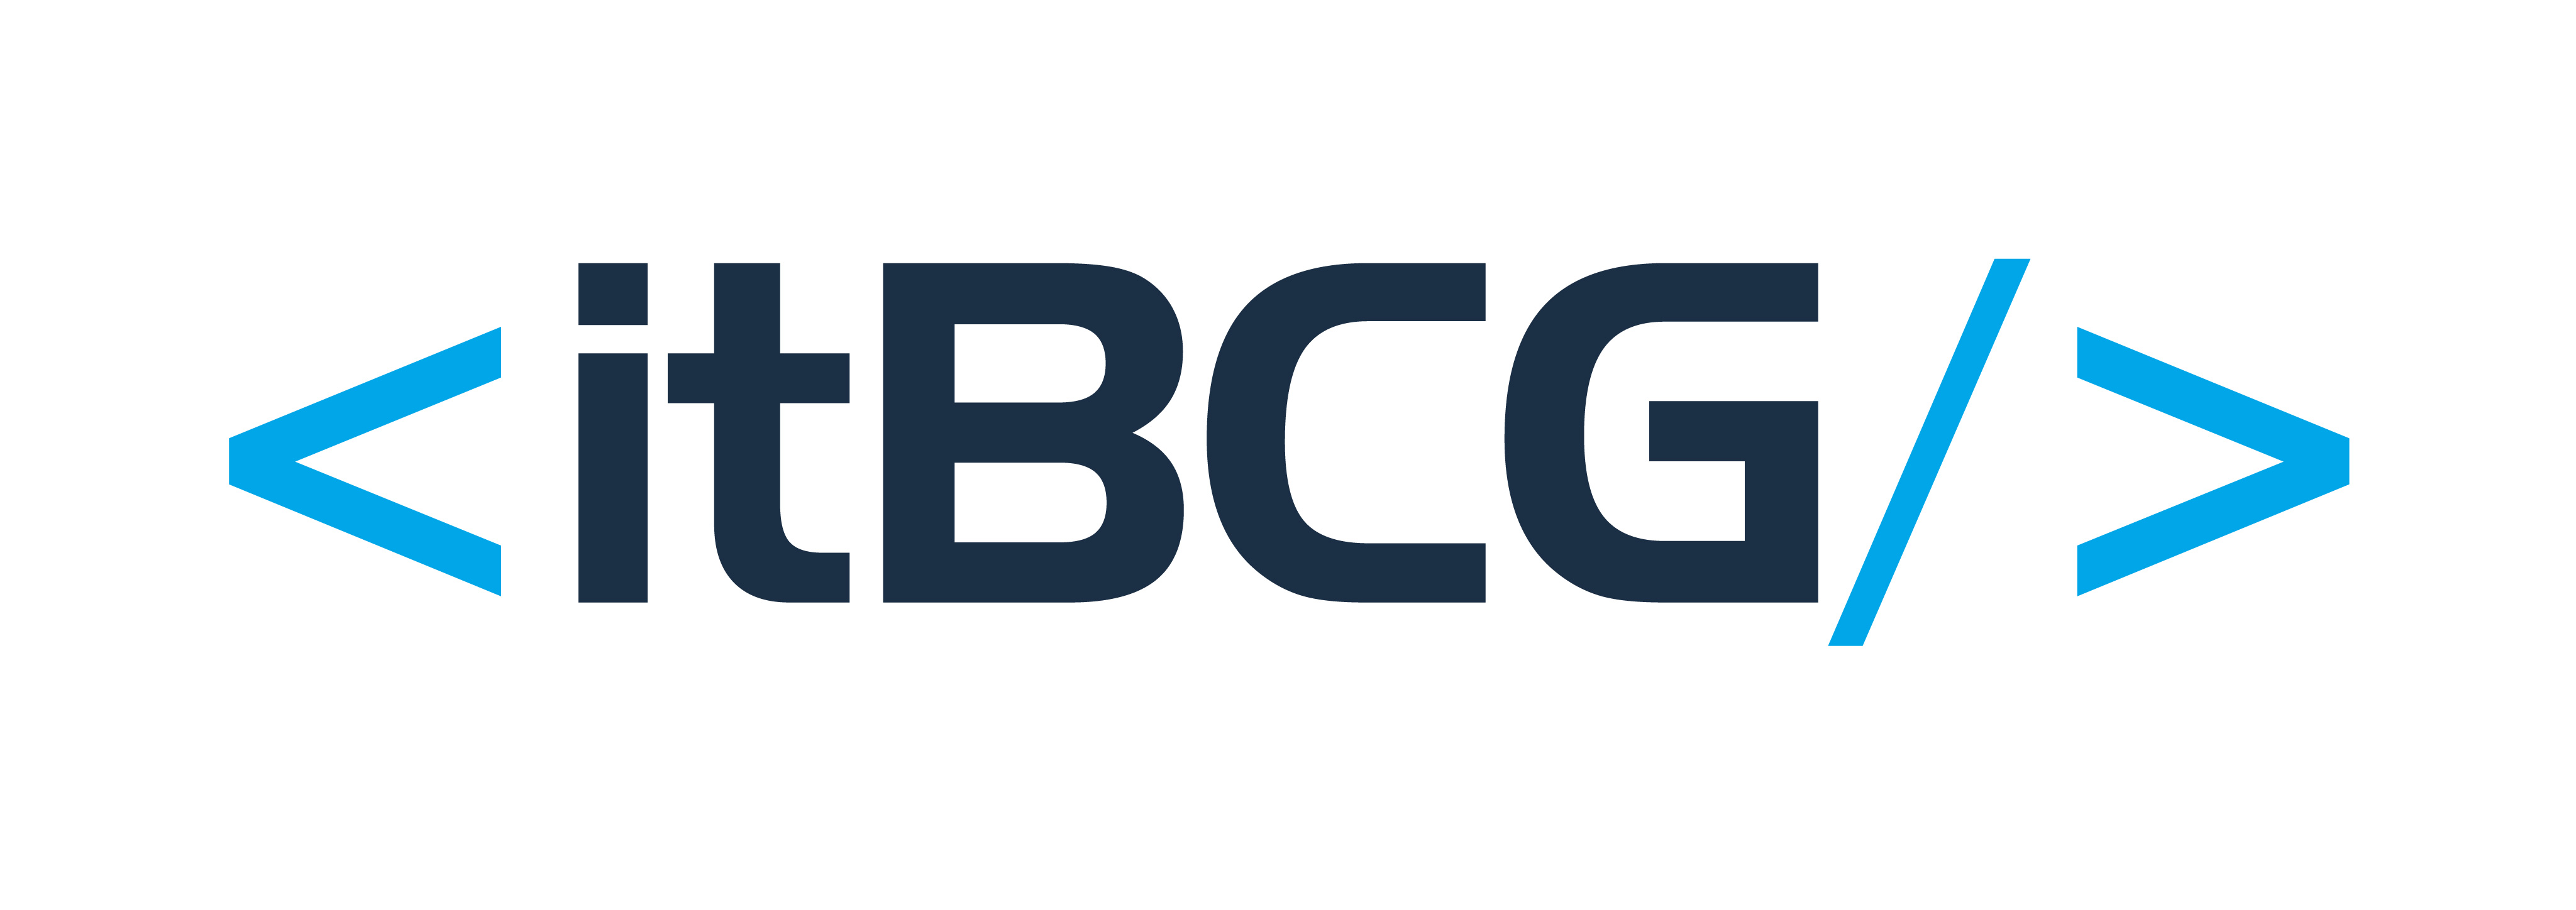 itbcg logo rgb color